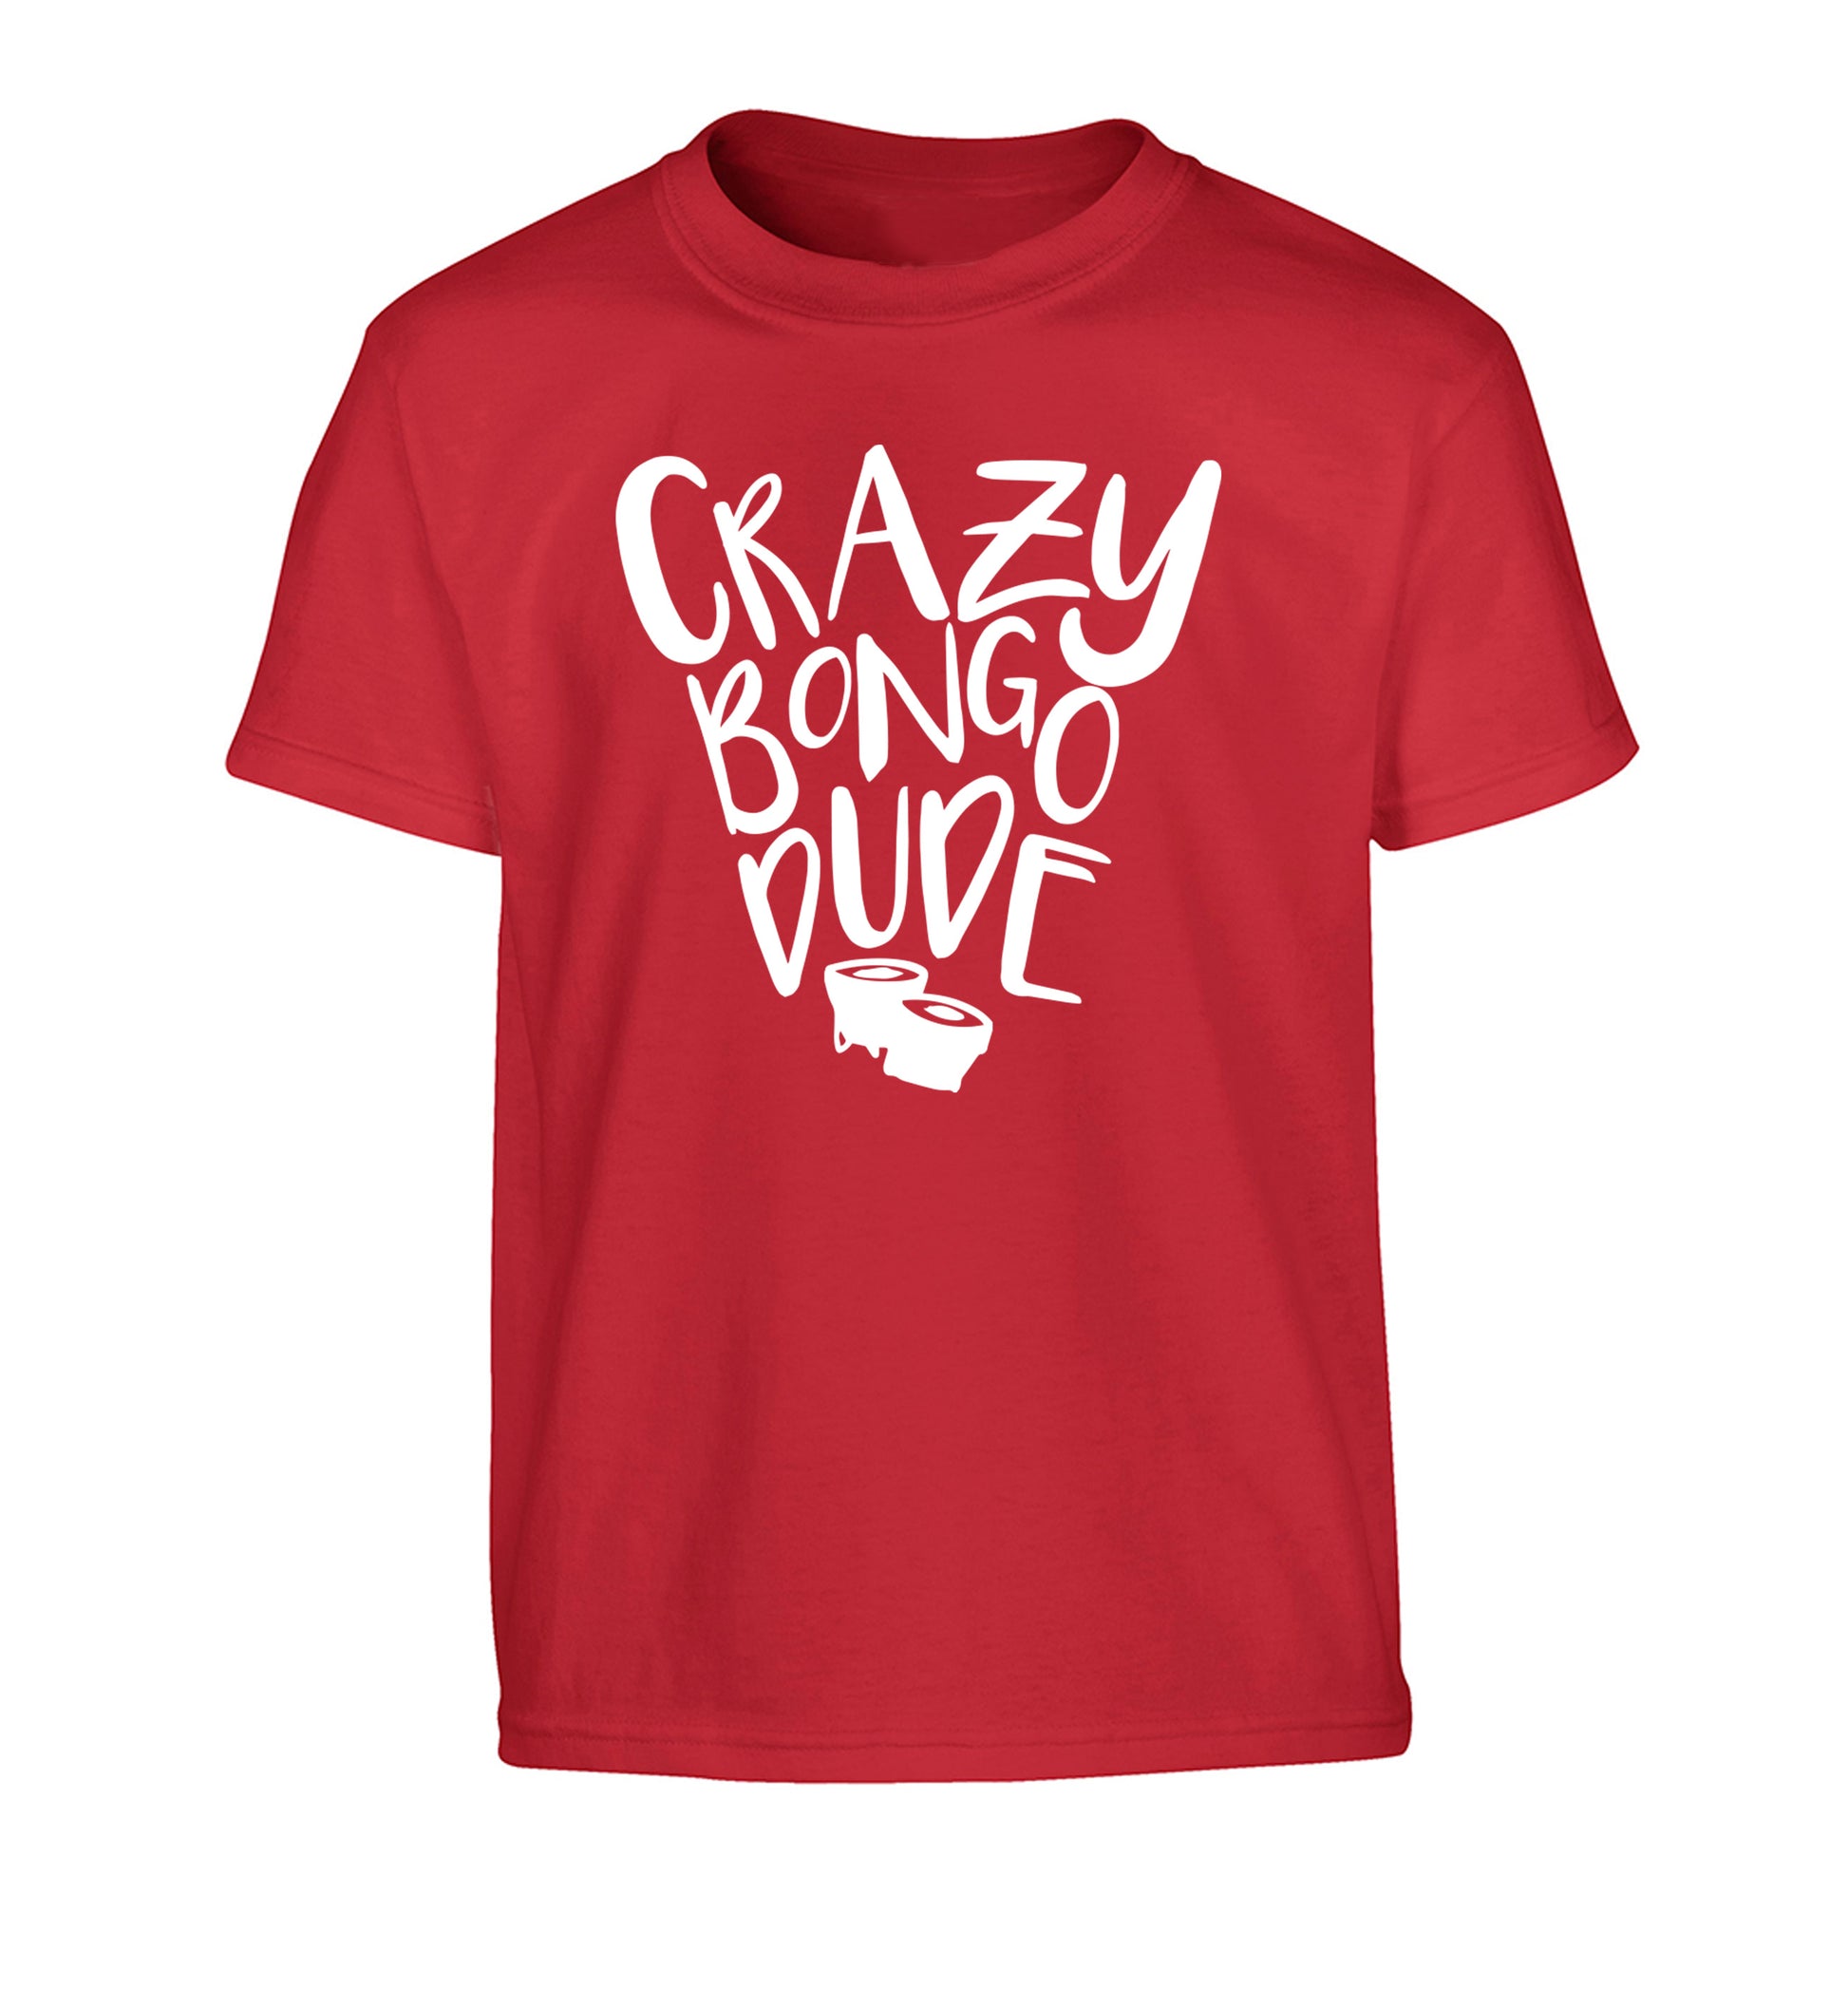 Crazy bongo dude Children's red Tshirt 12-14 Years